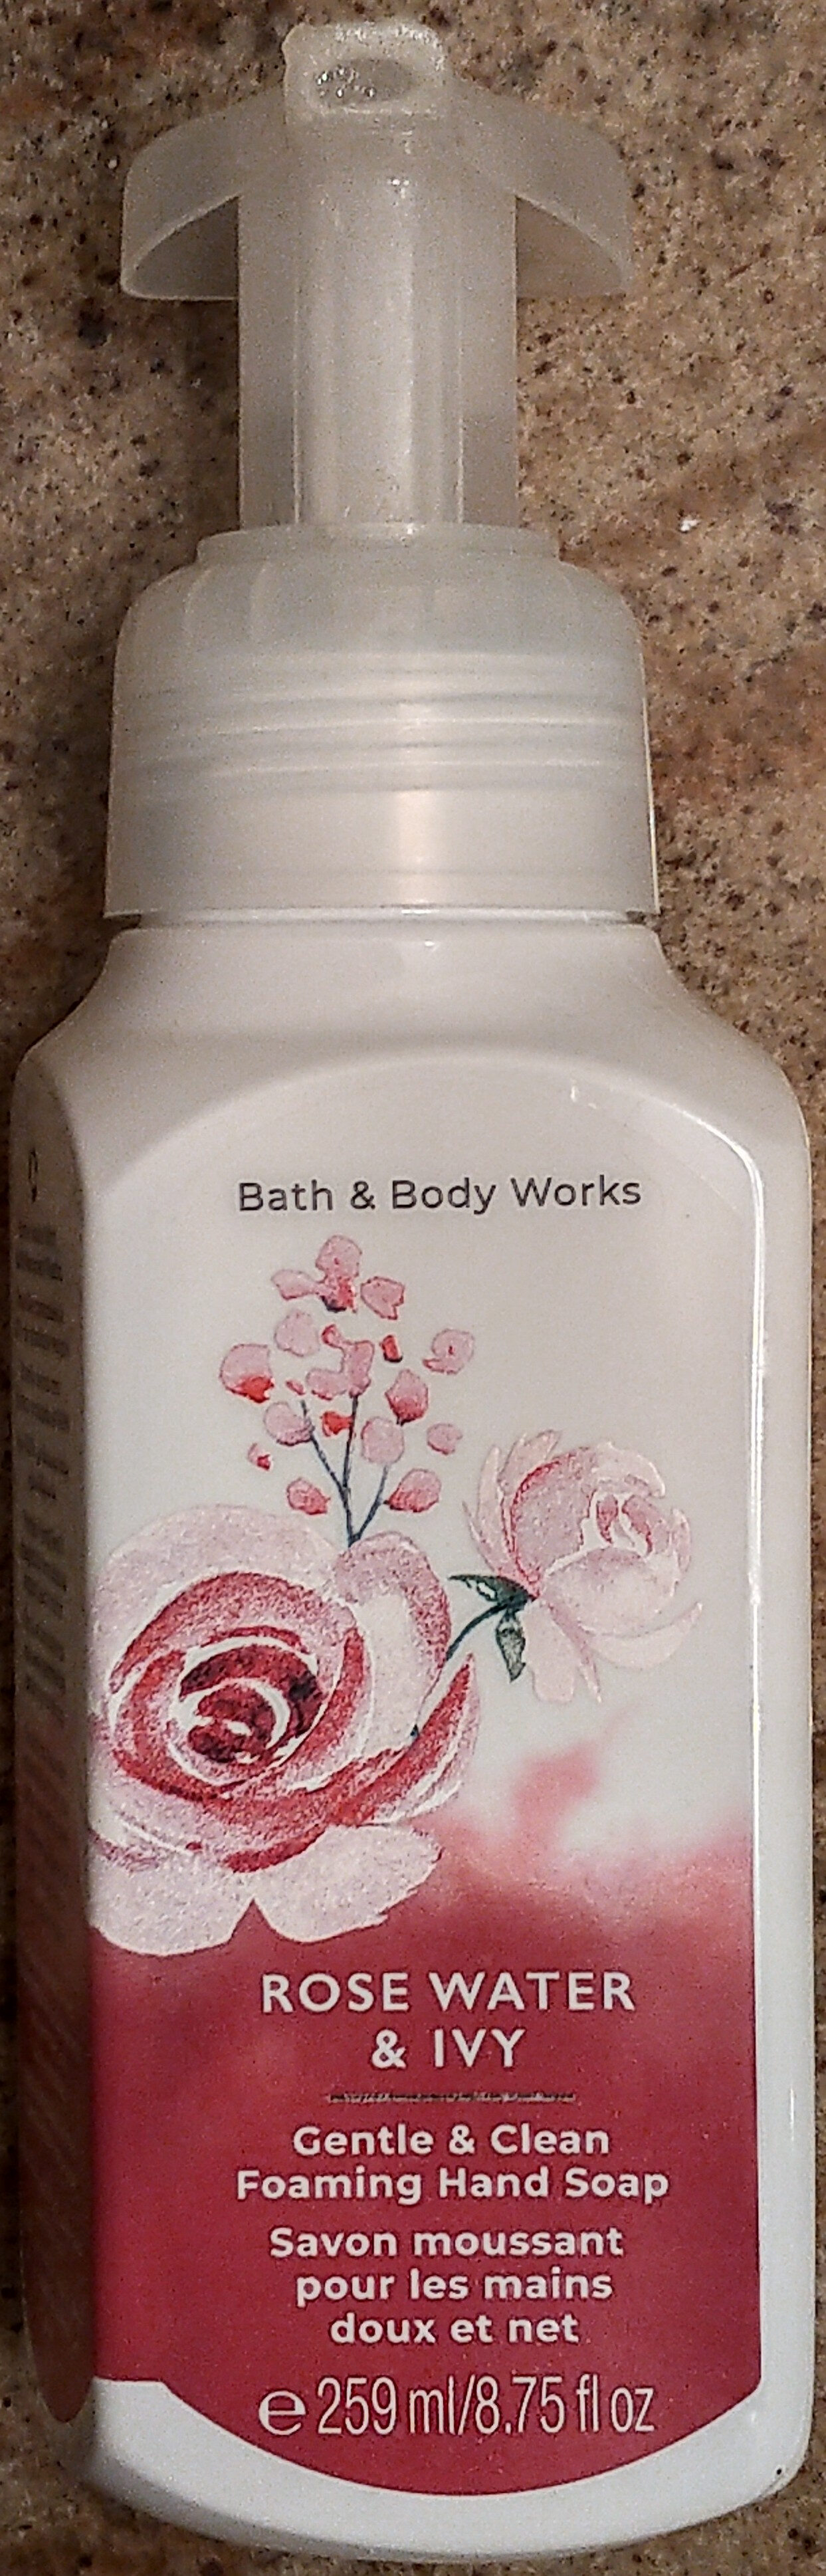 Rose Water & Ivy Gentle & Clean Foaming Hand Soap - Produkt - en